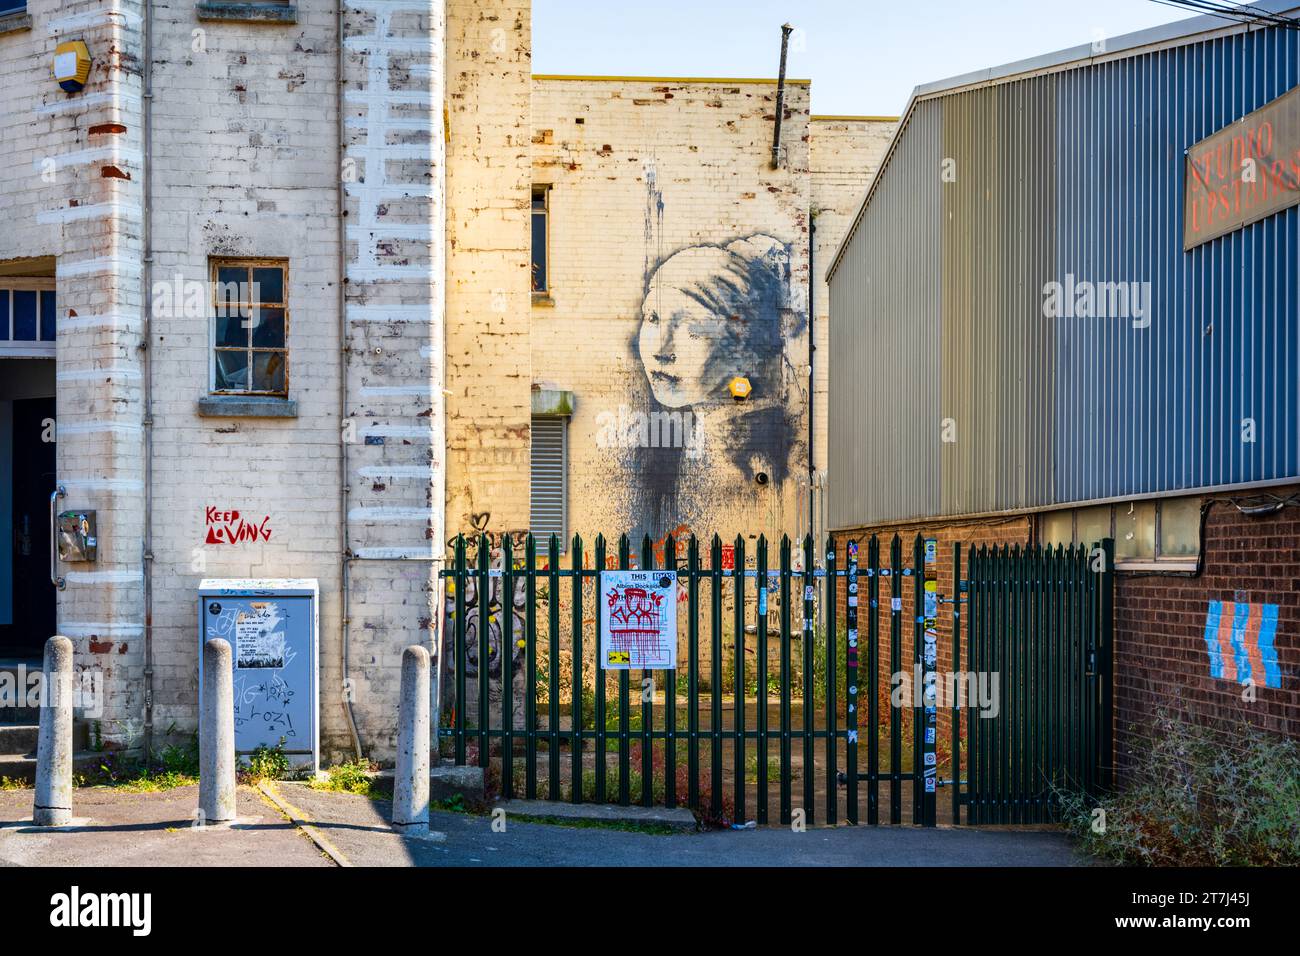 Girl with a Pierced Ohr drum (Mädchen mit einem durchbohrten Trommelfell) ist ein Wandgemälde des Straßenkünstlers Banksy aus dem Jahr 2014. Spike Island, Bristol, England, Großbritannien. Stockfoto